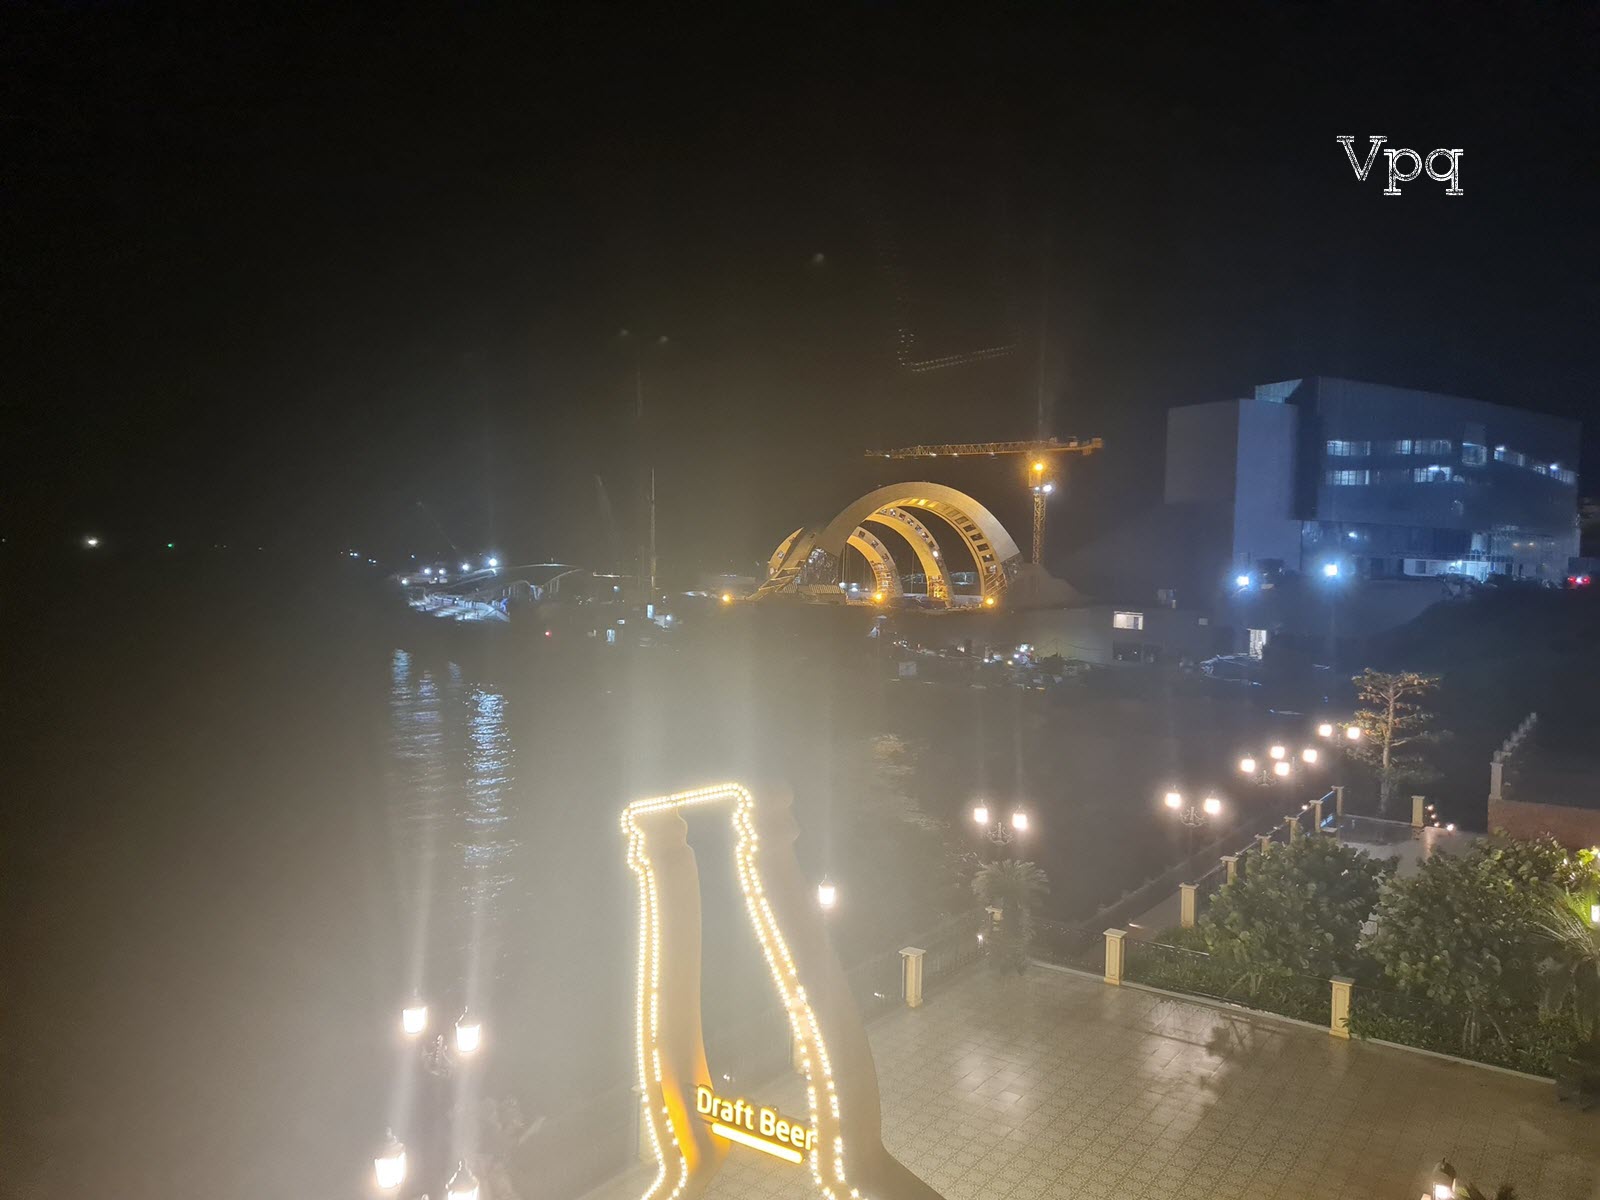 Draft Beer Địa Trung Hải Phú Quốc view trực diện Show Vortex và Cầu Hôn